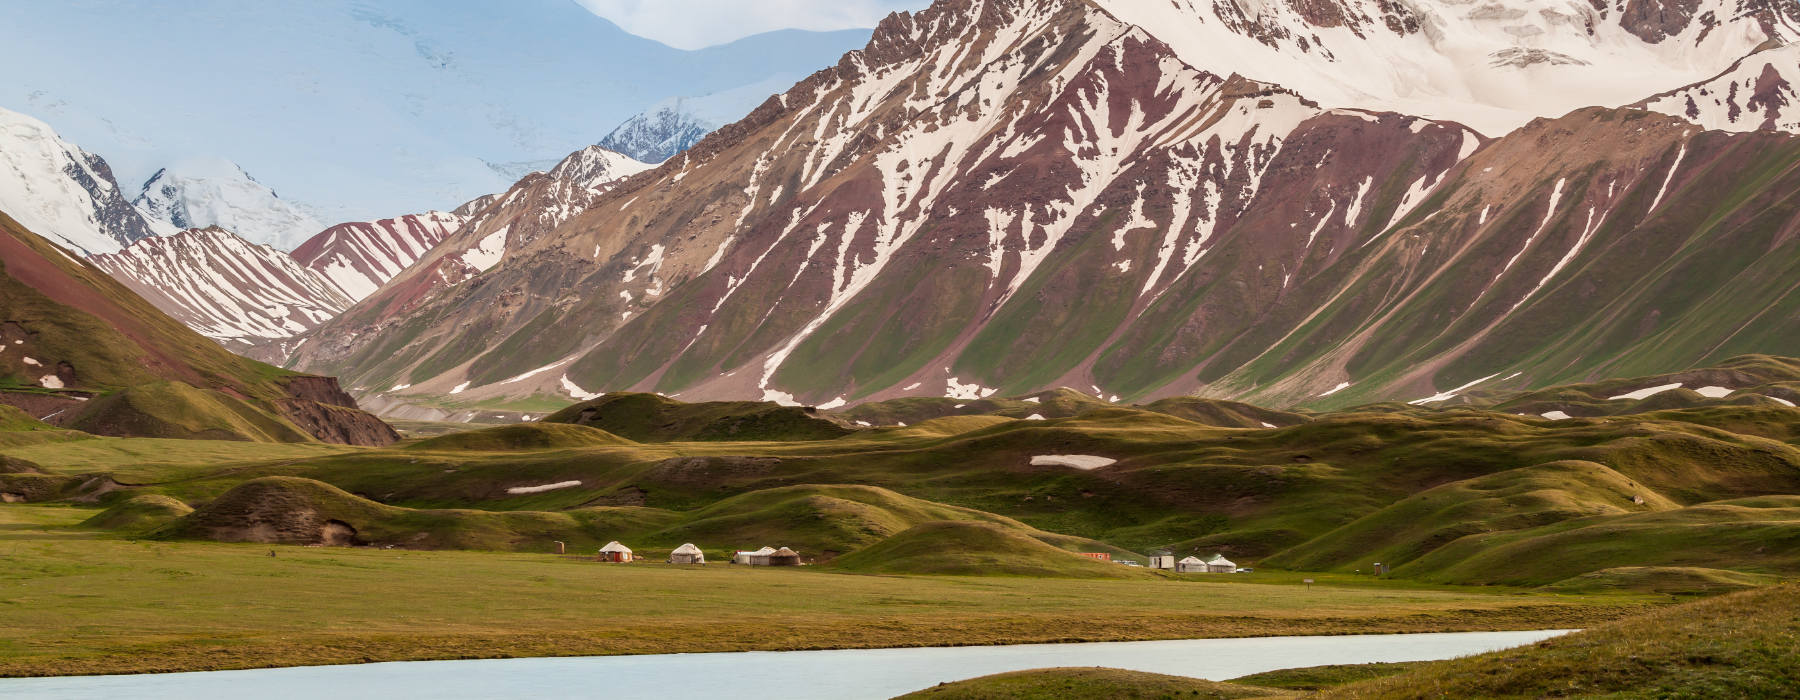 Kyrgyzstan<br class="hidden-md hidden-lg" /> Bird Watching Holidays